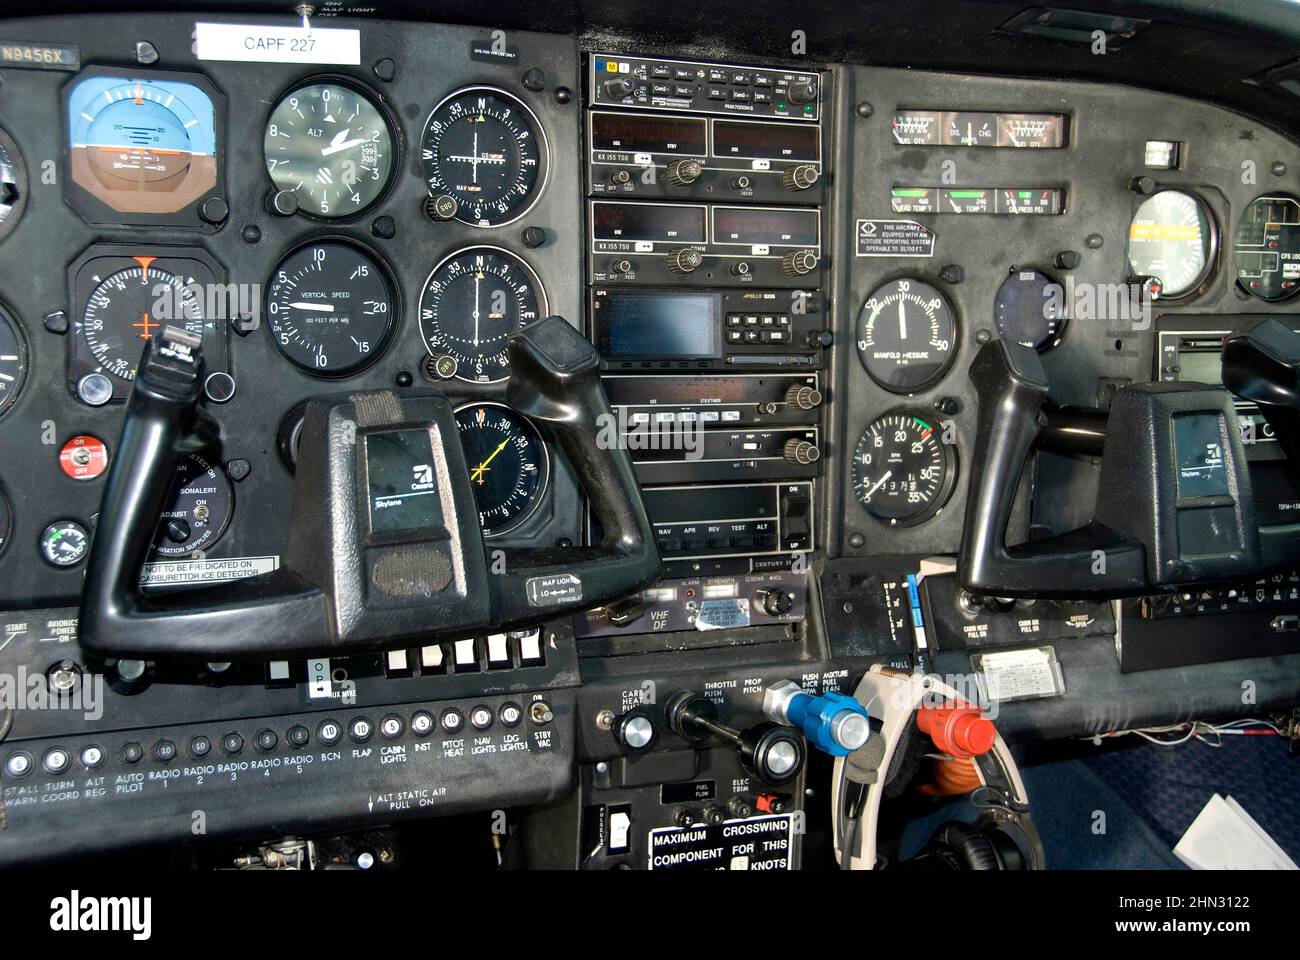 tableau de bord d'un panneau de commande d'avion affichant tous les indicateurs de navigation, cadrans et autres instruments de connectivité radio Banque D'Images